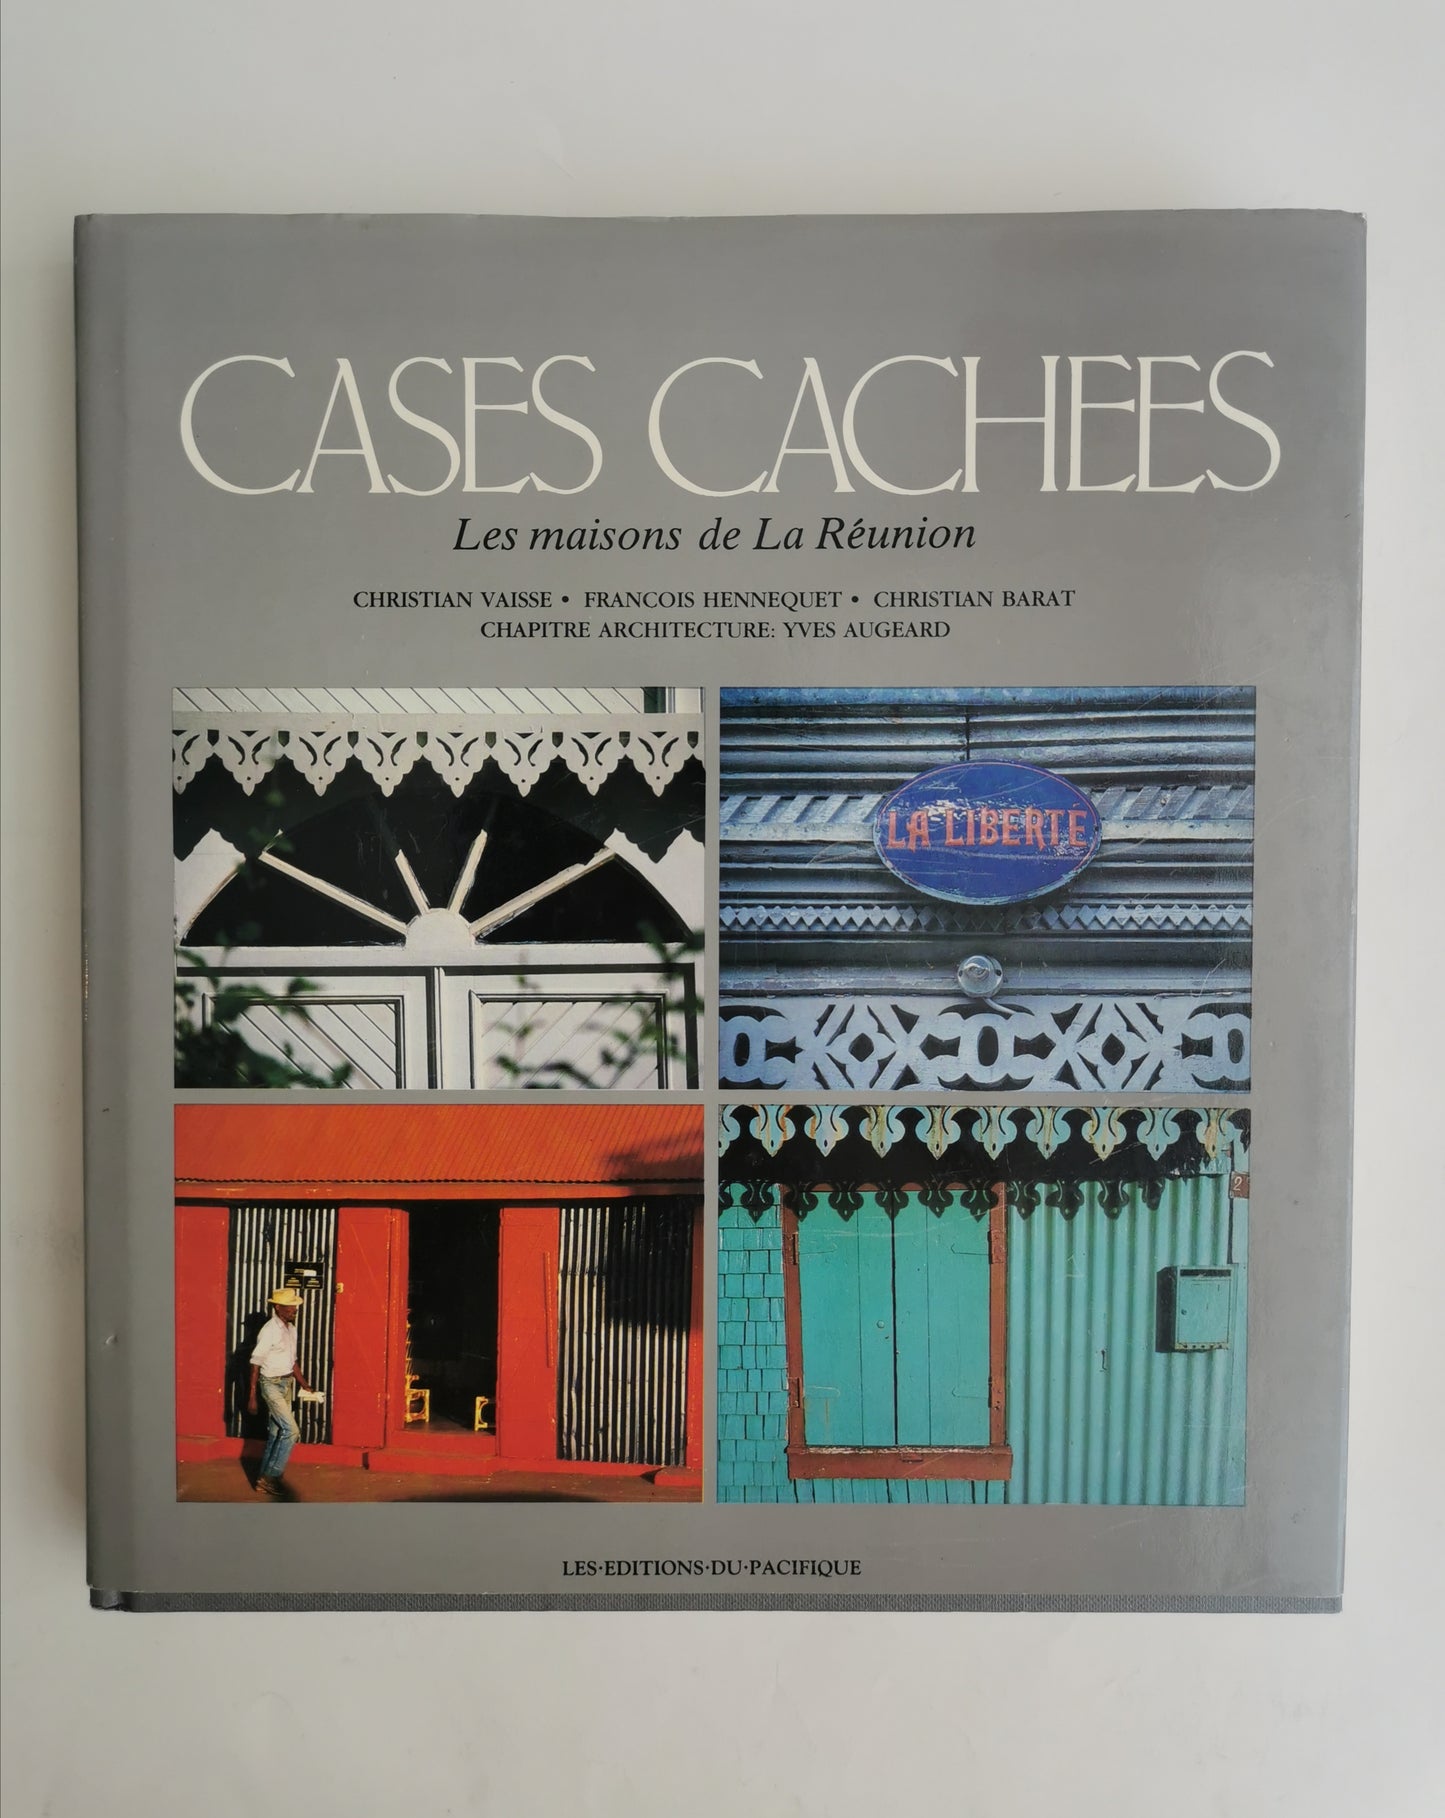 Les cases cachées, Les Maisons De La Réunion, Collectif, Times Editions, Les Editions du Pacifique, 1987.